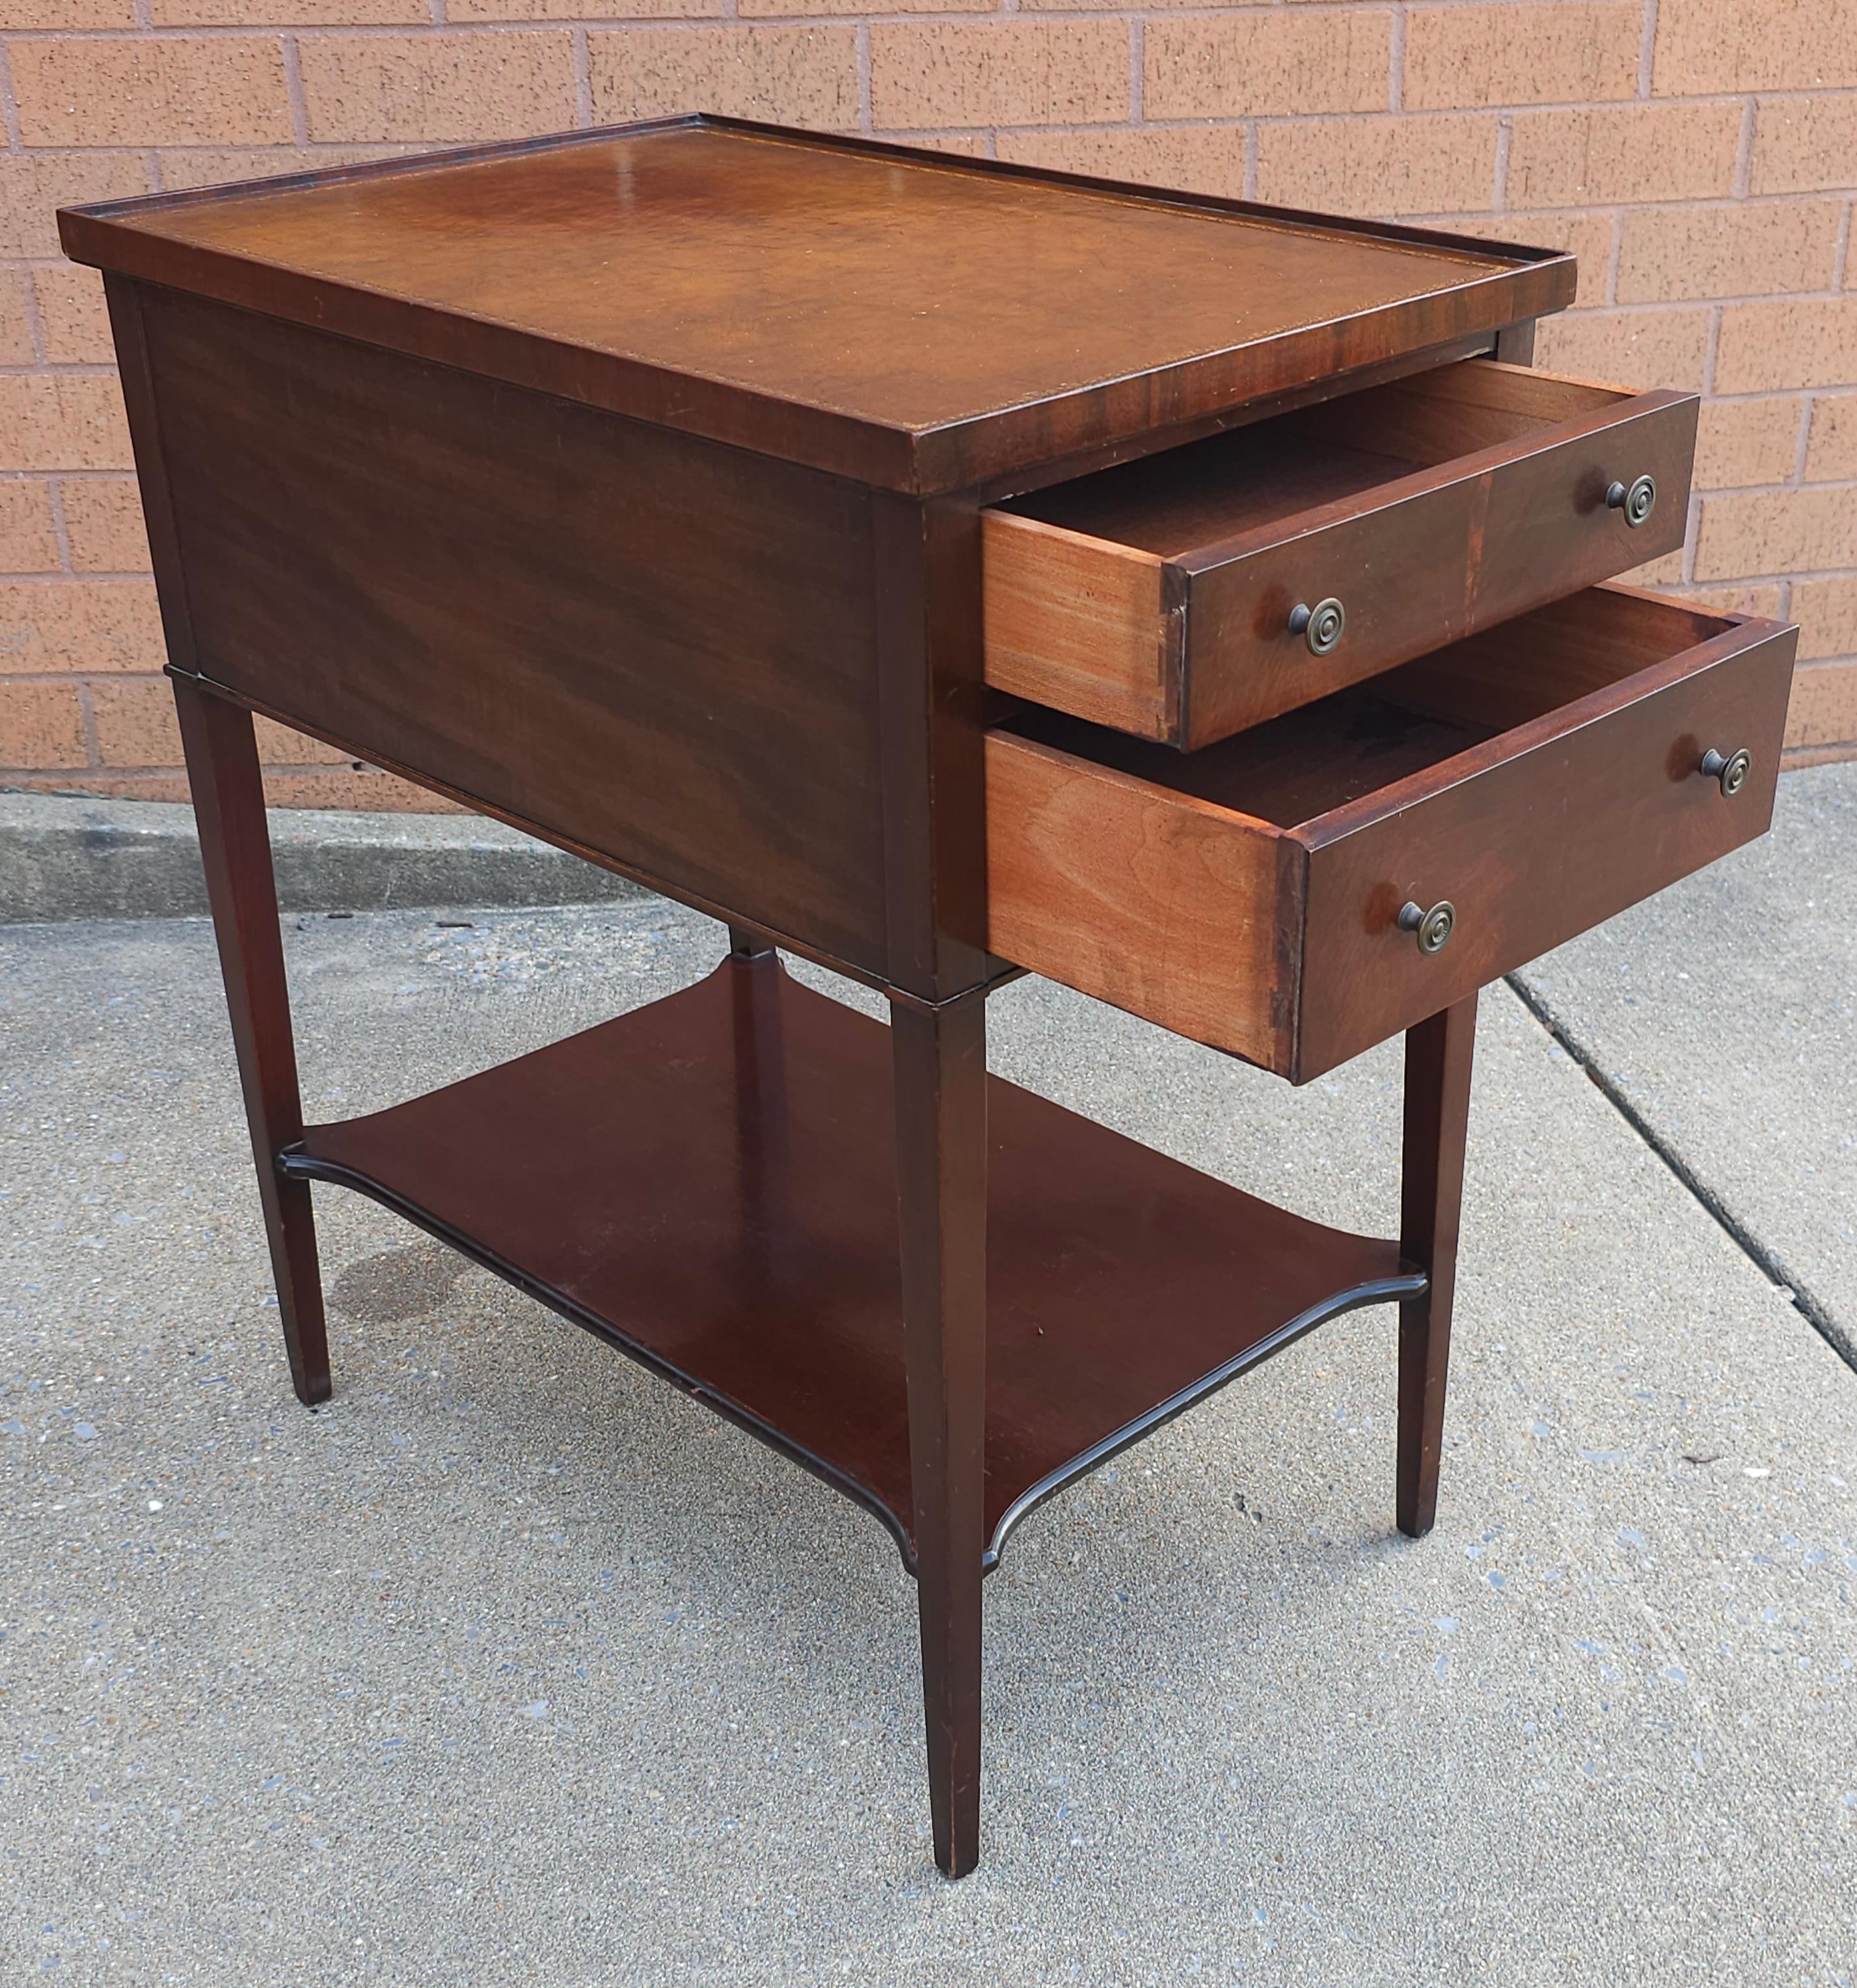 Table d'appoint à deux tiroirs en acajou et cuir tolélé avec pochoir doré Imperial Grand Rapids Furniture
Mesure 15